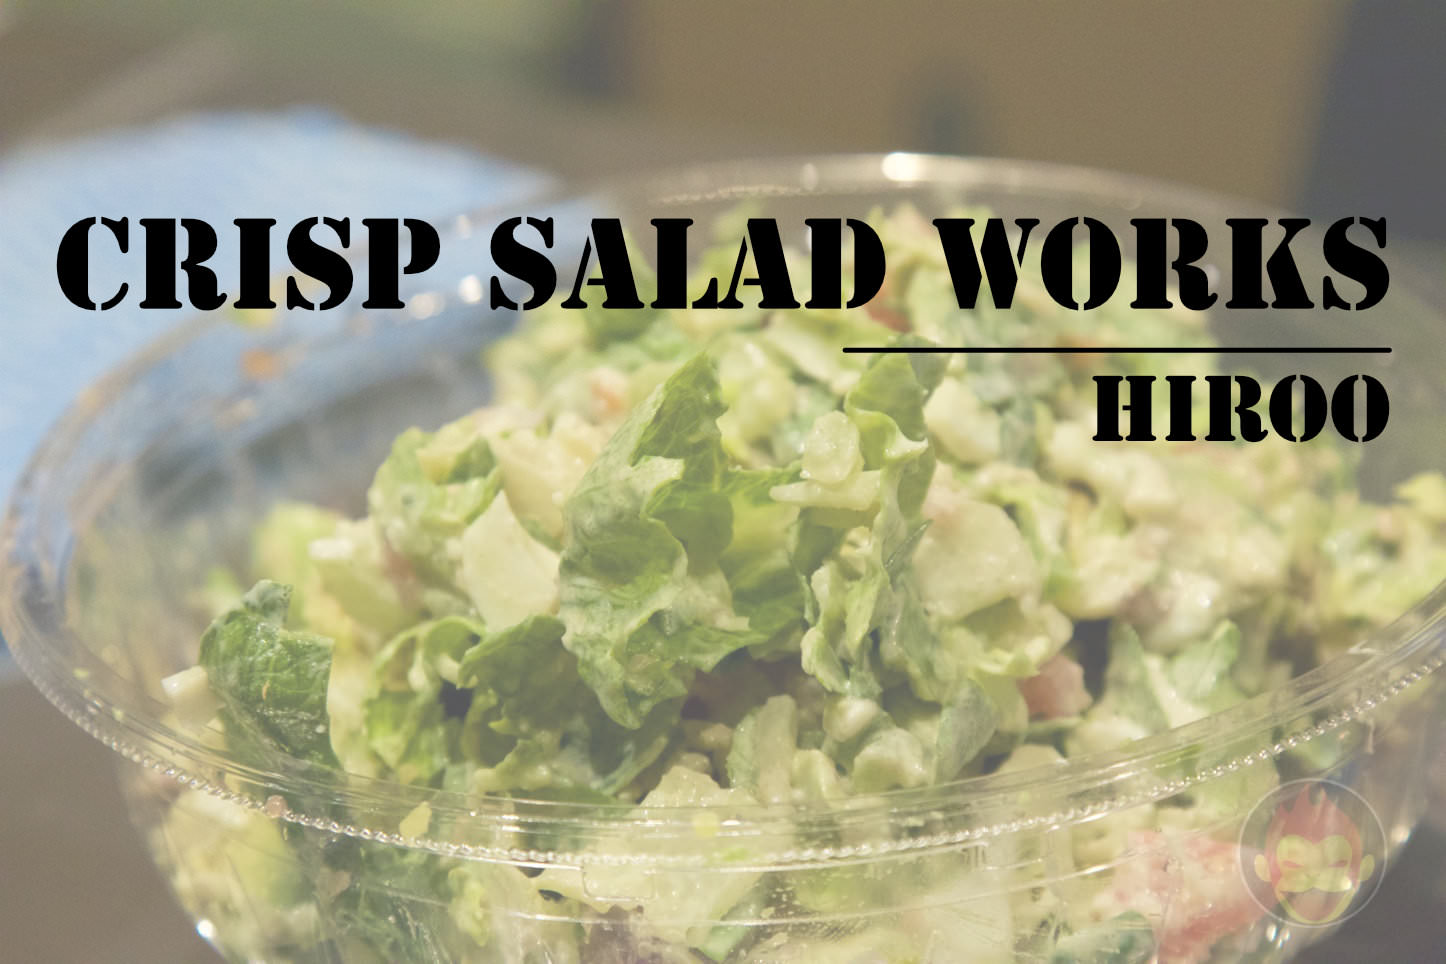 Crisp-Salad-Works-Salad-Hiroo.jpg